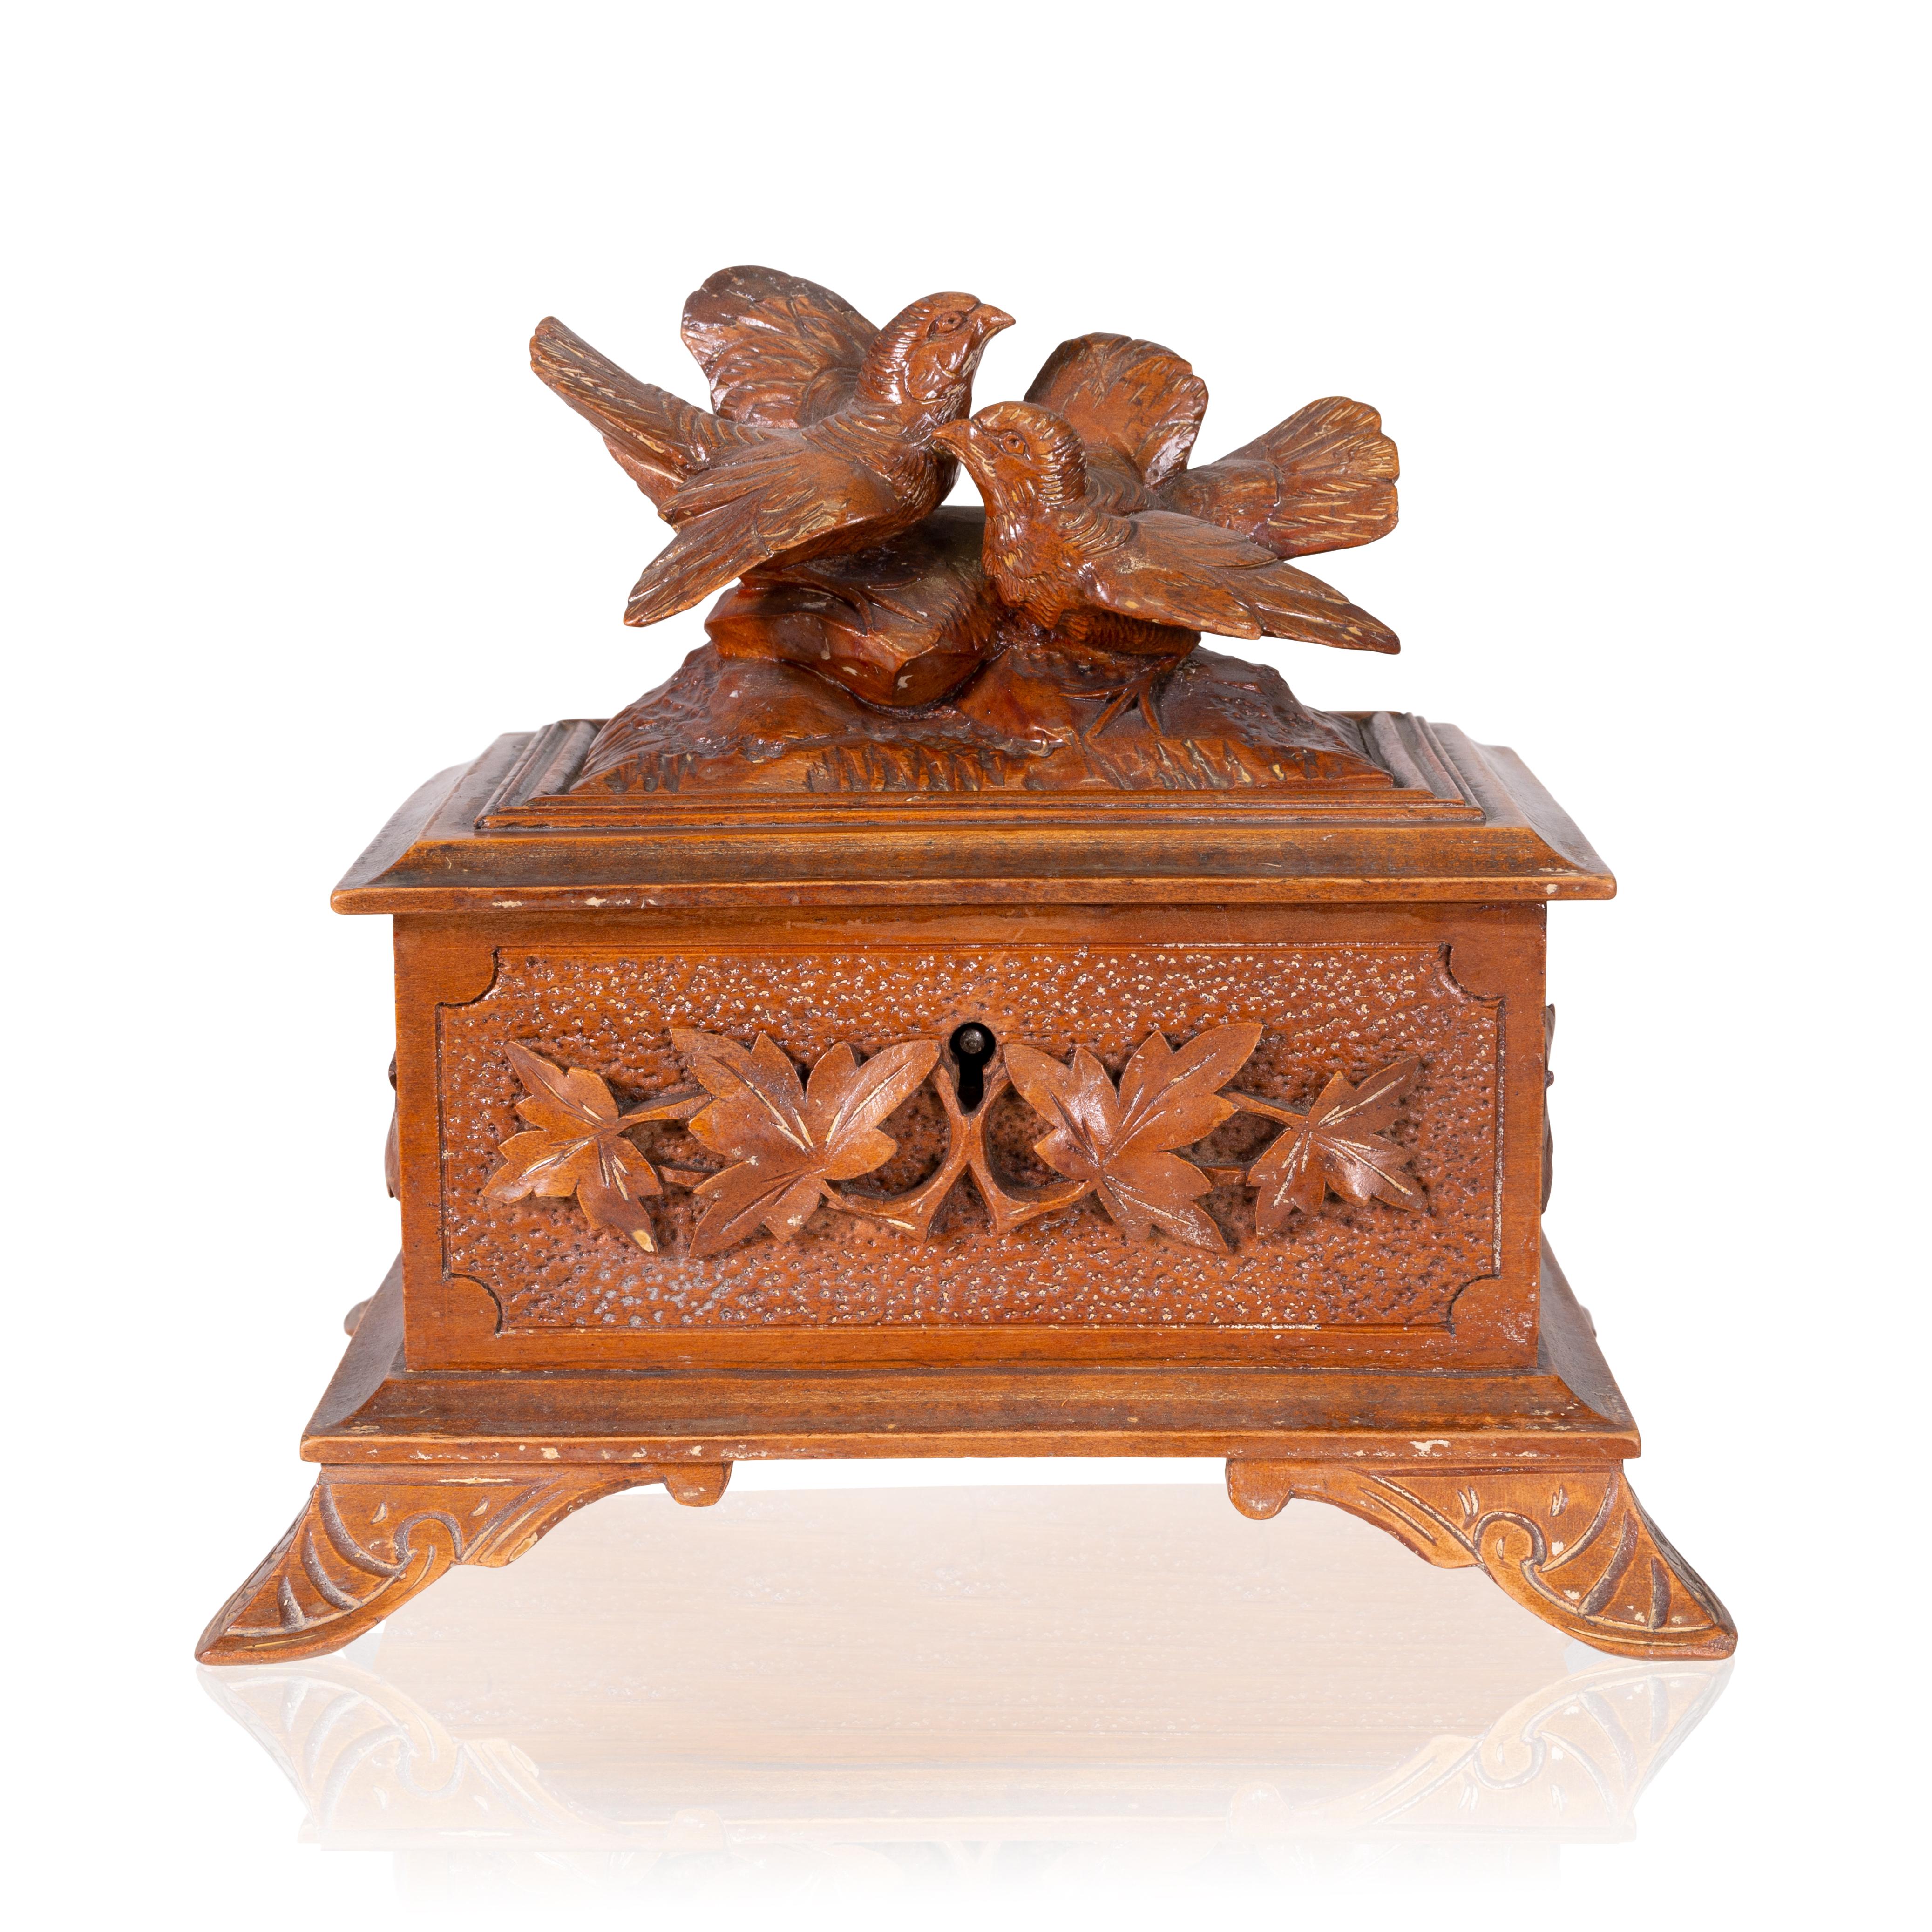 Magnifique boîte à bijoux sculptée à la main en Forêt Noire, avec deux oiseaux chanteurs comme fleurons. Livré avec la clé originale. Une trouvaille unique. 

Origine : Suisse, vers 1900 

Dimensions : 6